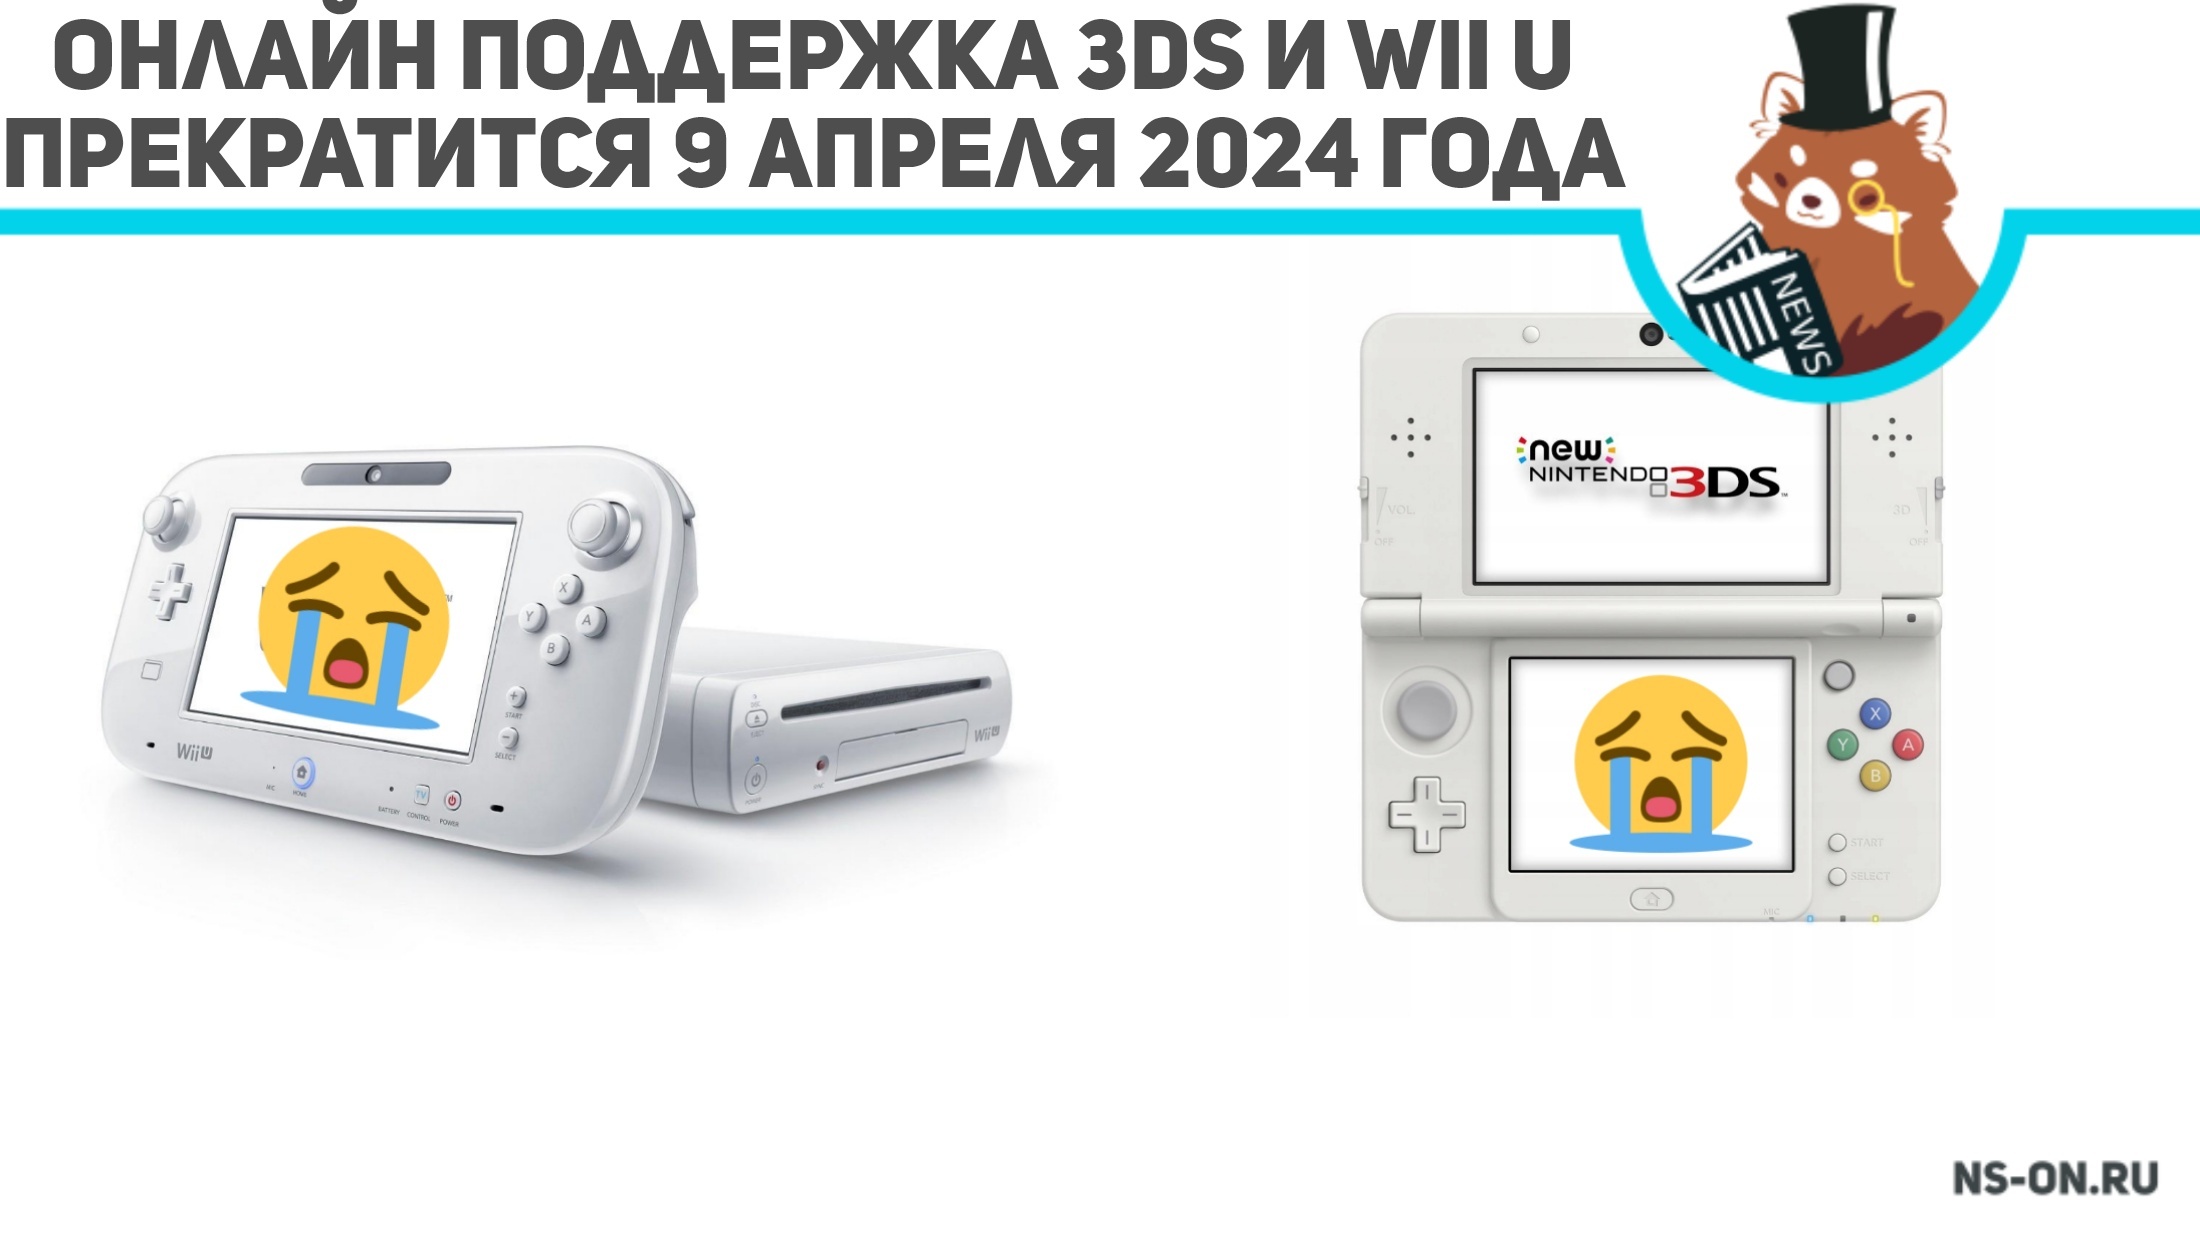 Вы сейчас просматриваете Онлайн поддержка 3DS и Wii U прекратится 9 апреля 2024 года